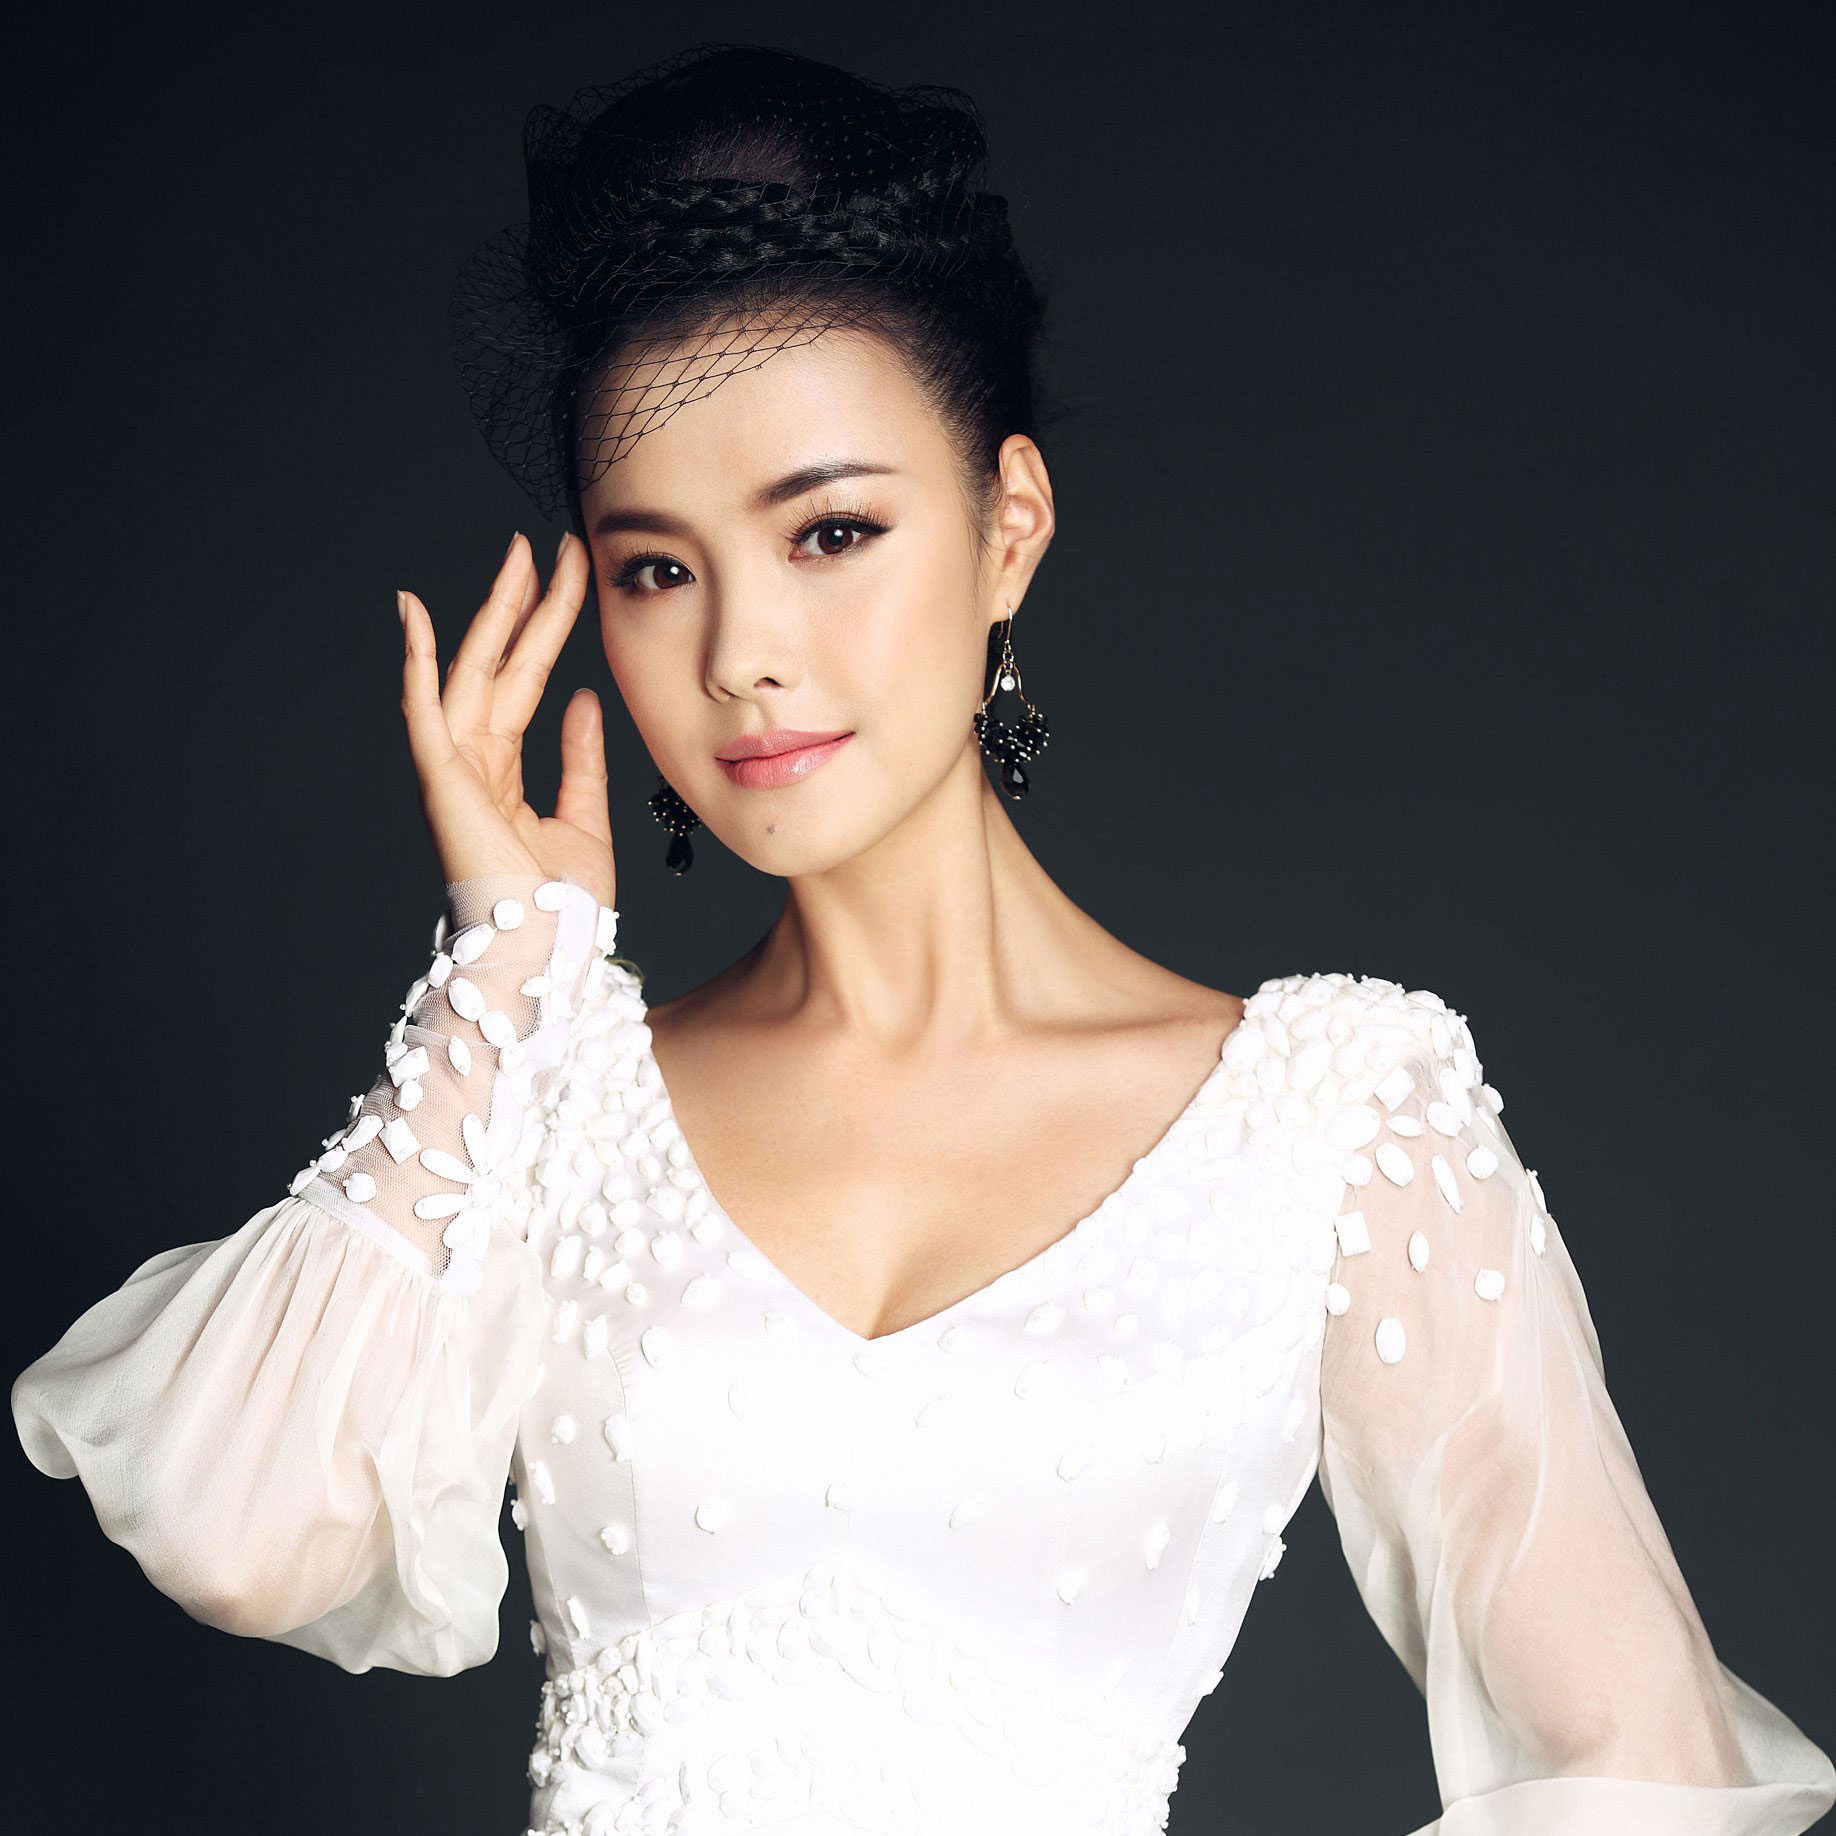 著名女歌手王菲 [20P] - 美女贴图 - 华声论坛